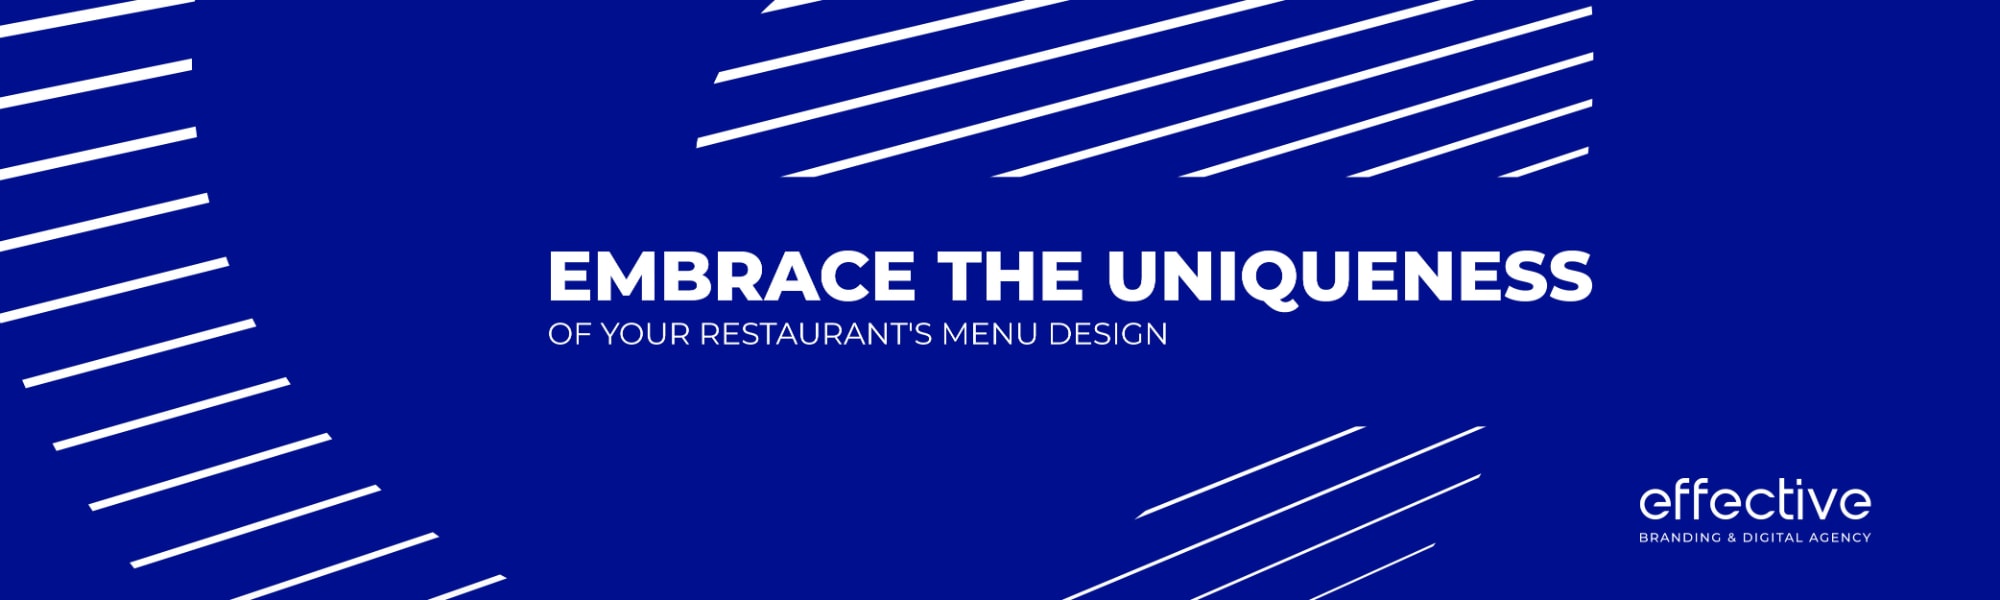 Embrace the Uniqueness of Your Restaurant Menu Design